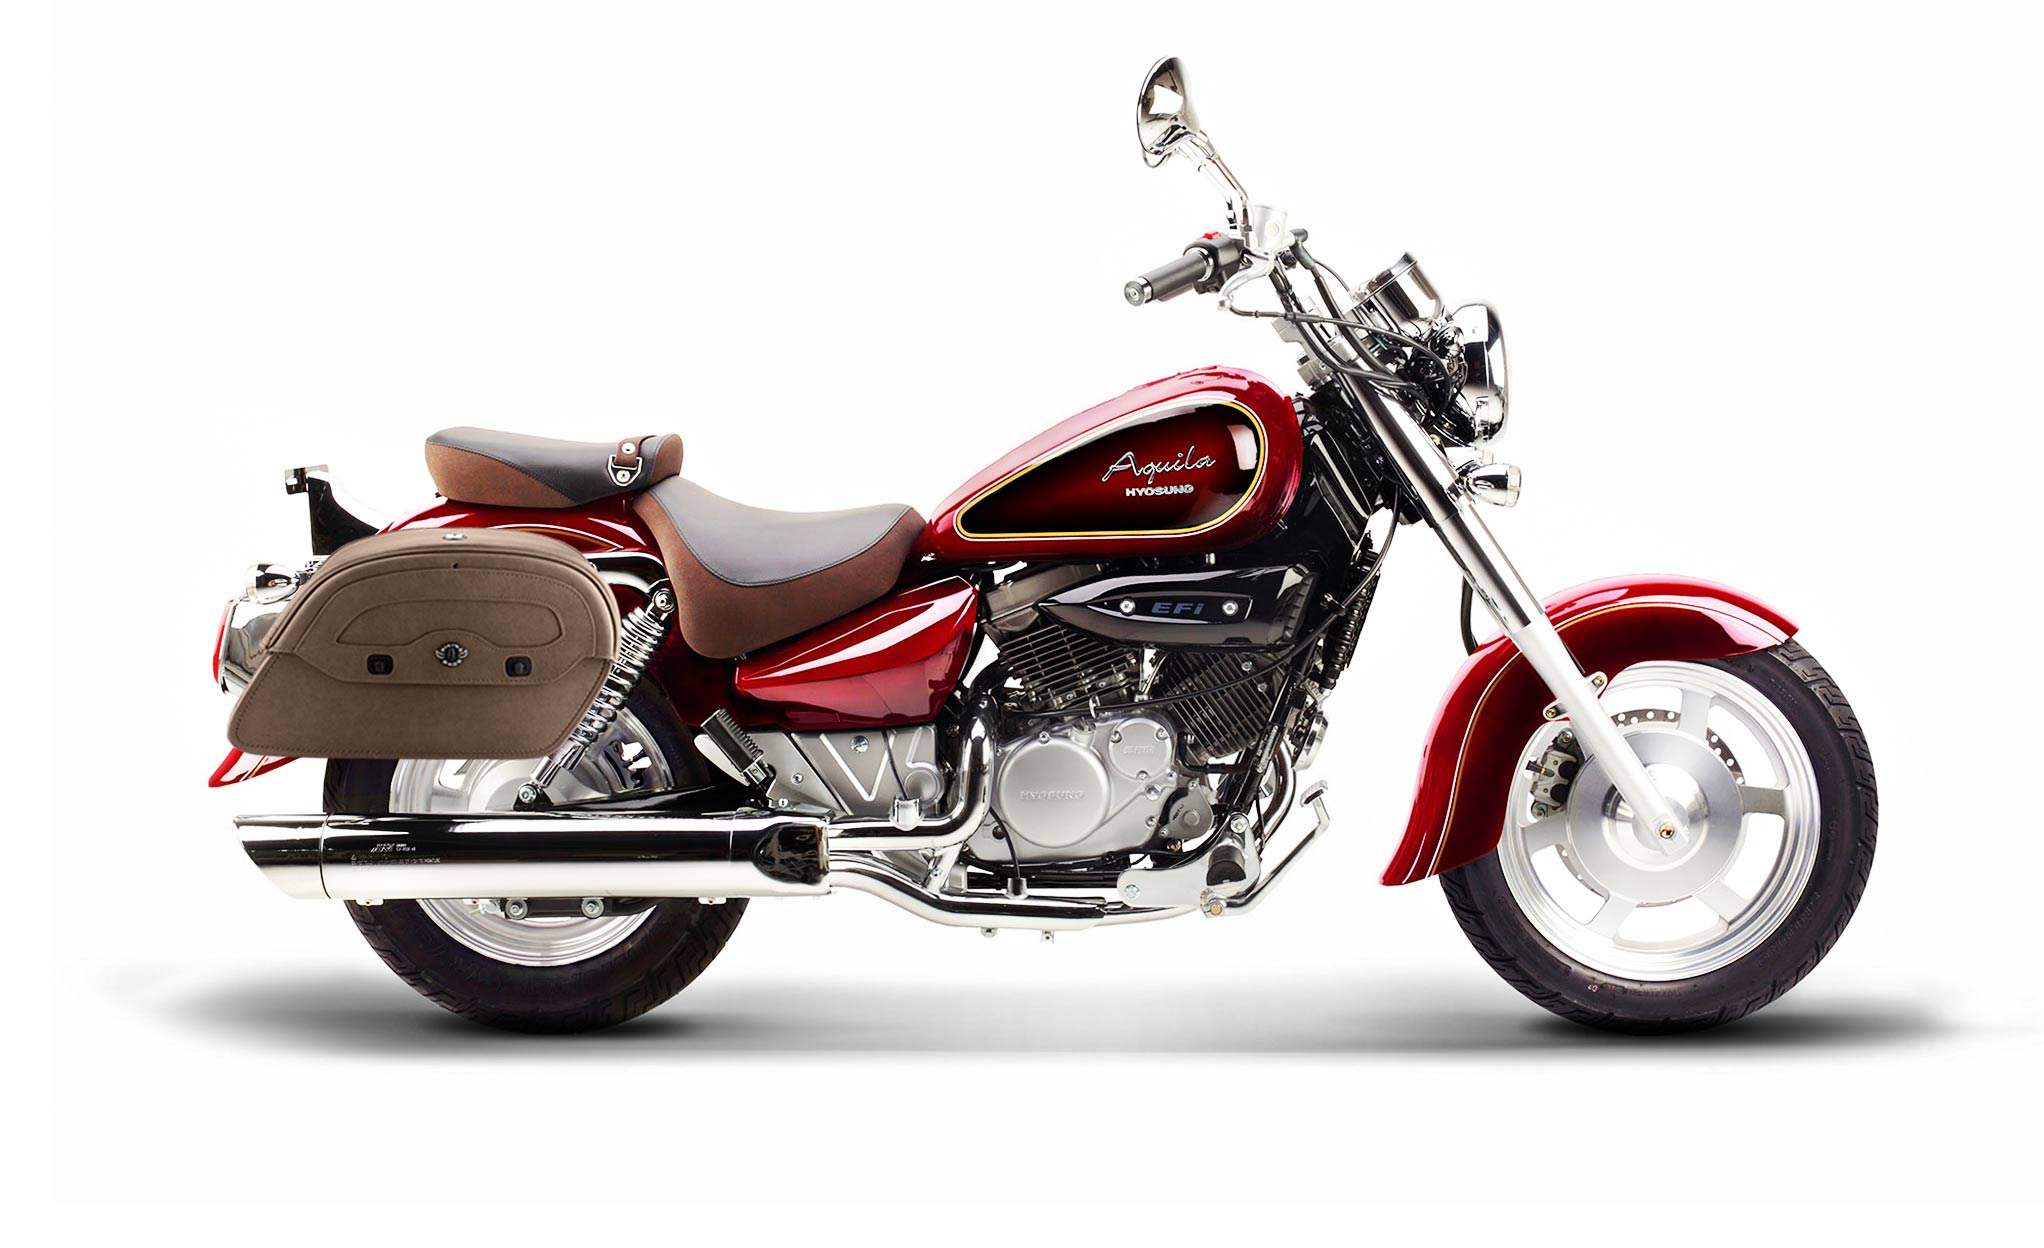 Viking Warrior Brown Large Hyosung Aquila Gv 250 Leather Motorcycle Saddlebags on Bike Photo @expand